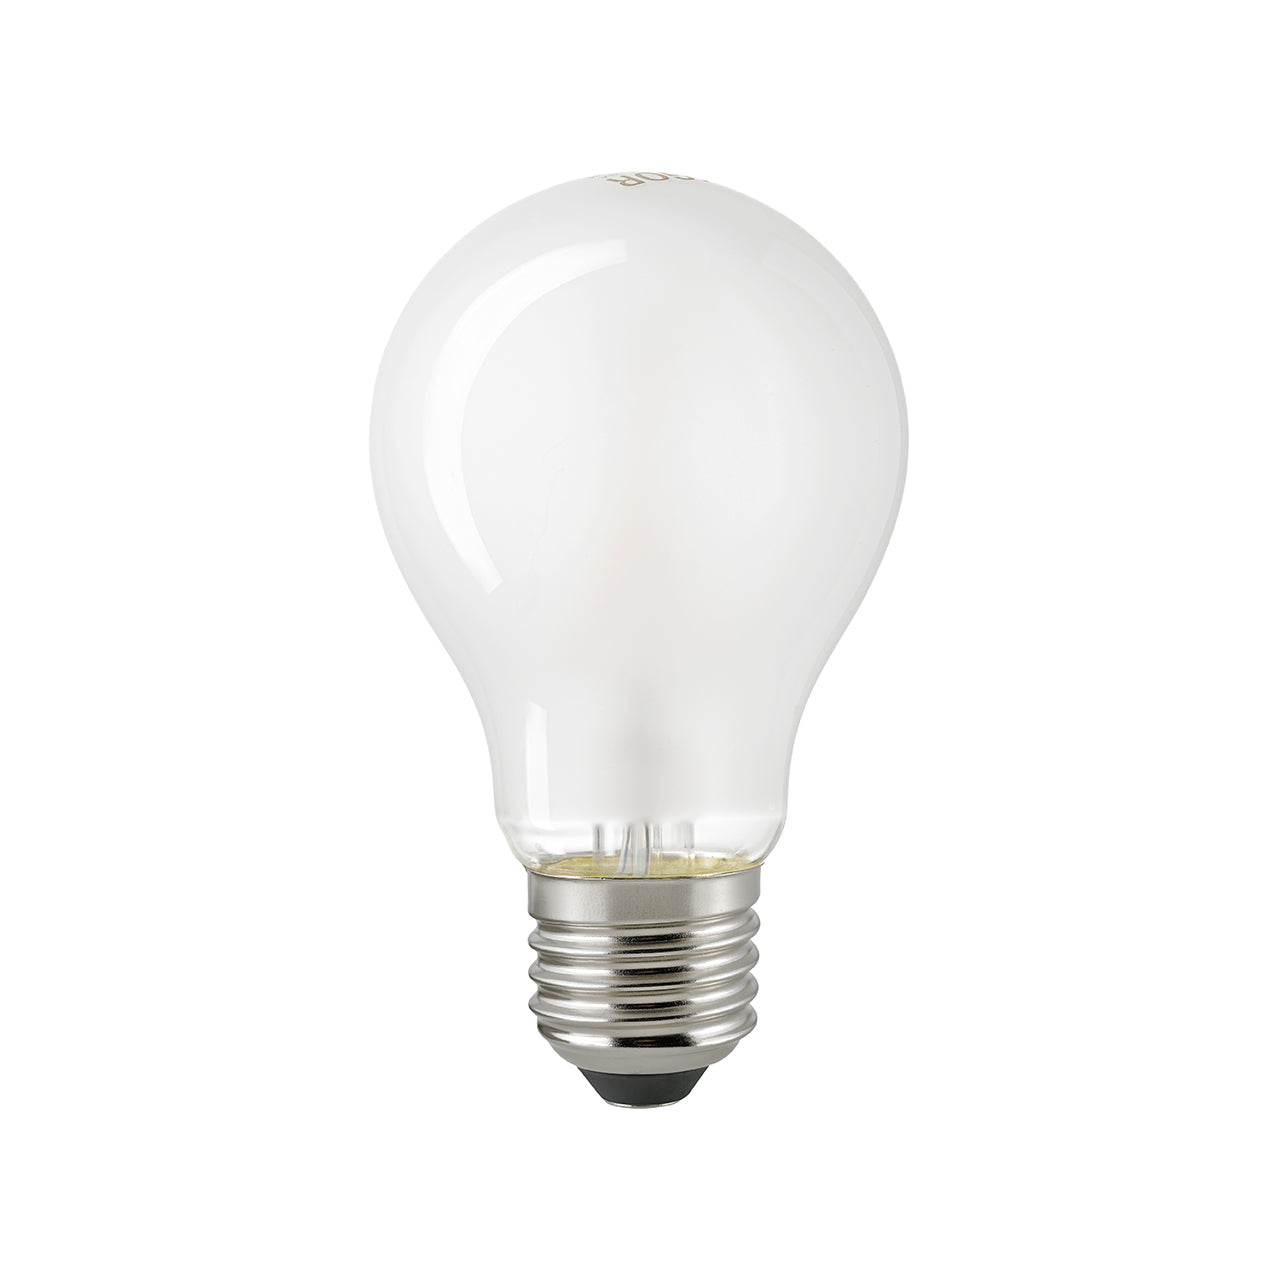 Light bulb E27 1055 lm